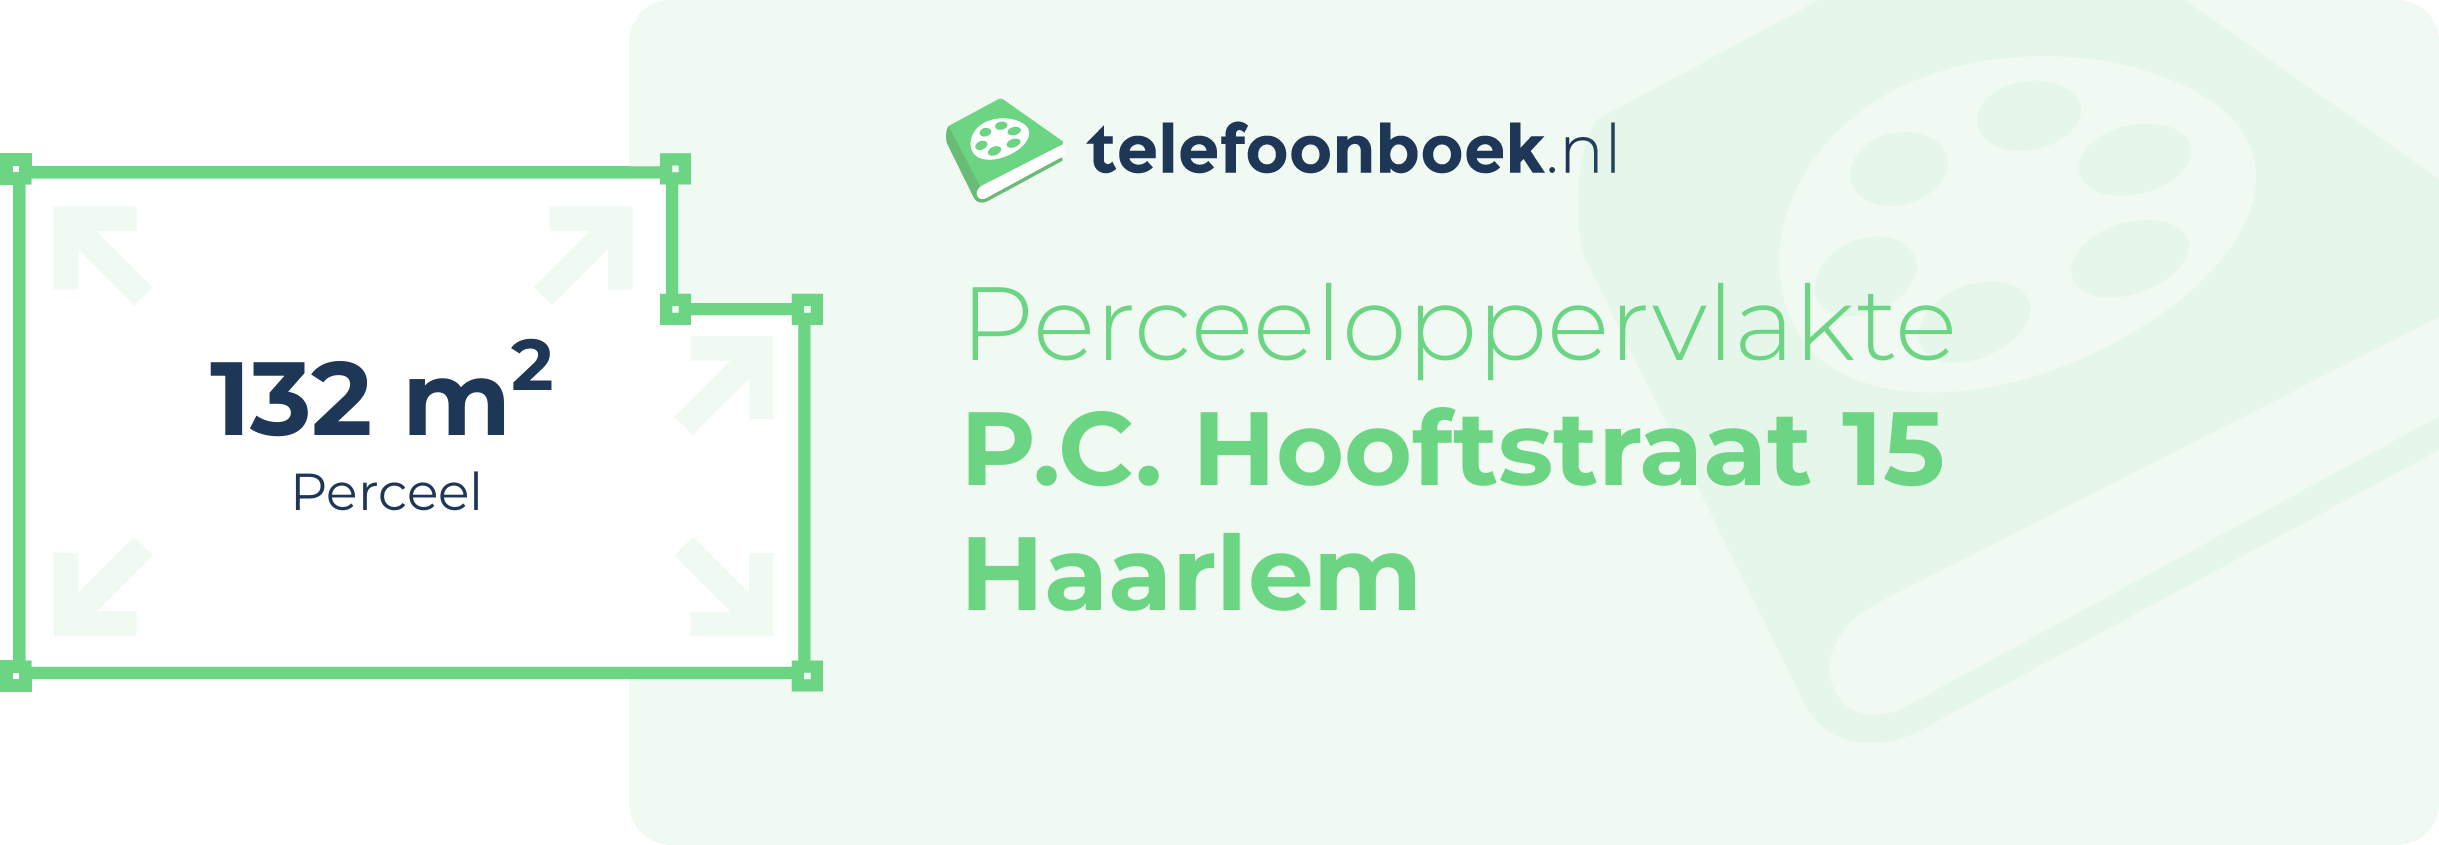 Perceeloppervlakte P.C. Hooftstraat 15 Haarlem